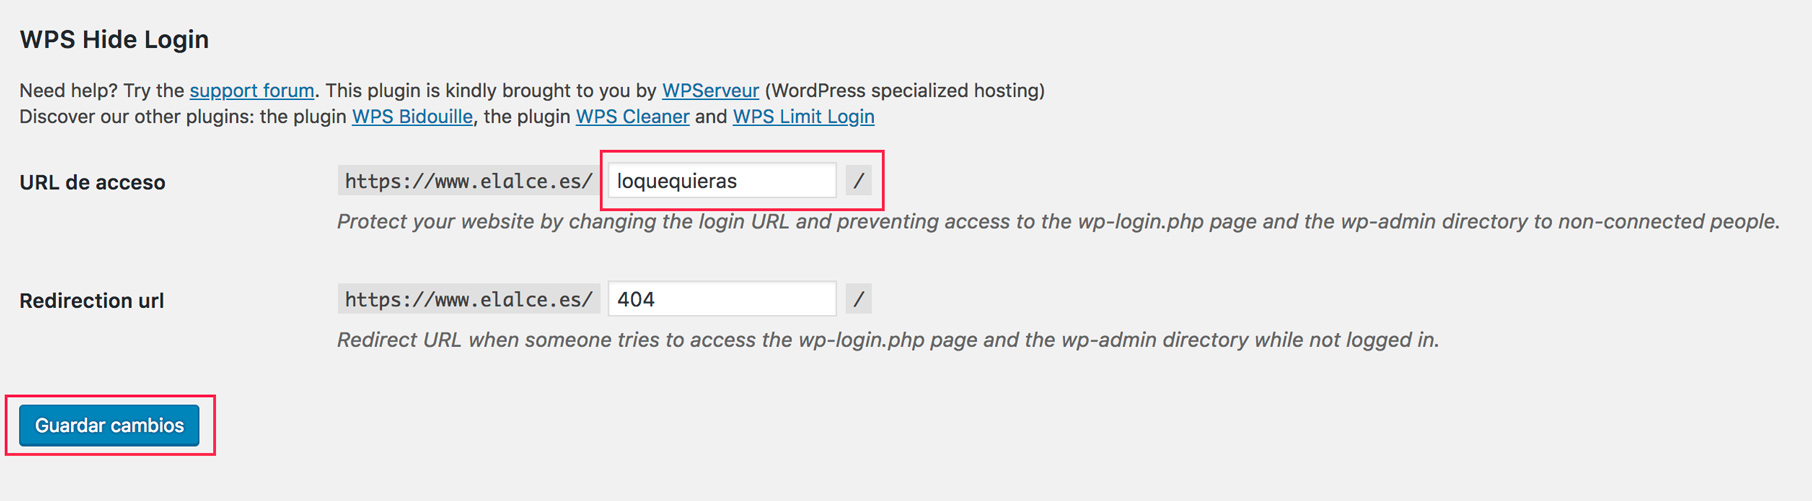 WPS hide login para cambiar acceso worpdress